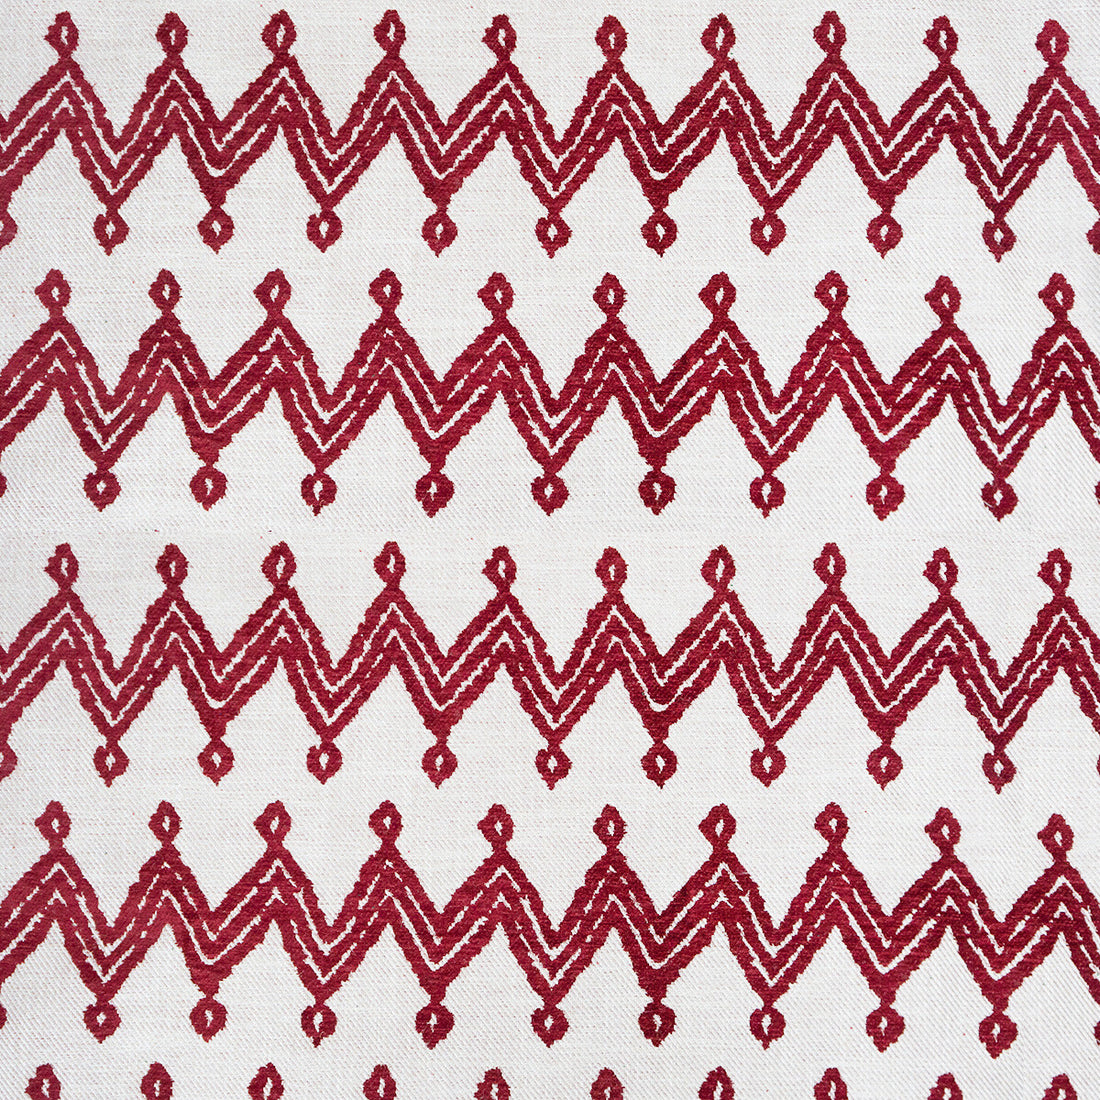 Navajo fabric in rojo color - pattern GDT5653.002.0 - by Gaston y Daniela in the Gaston Rio Grande collection